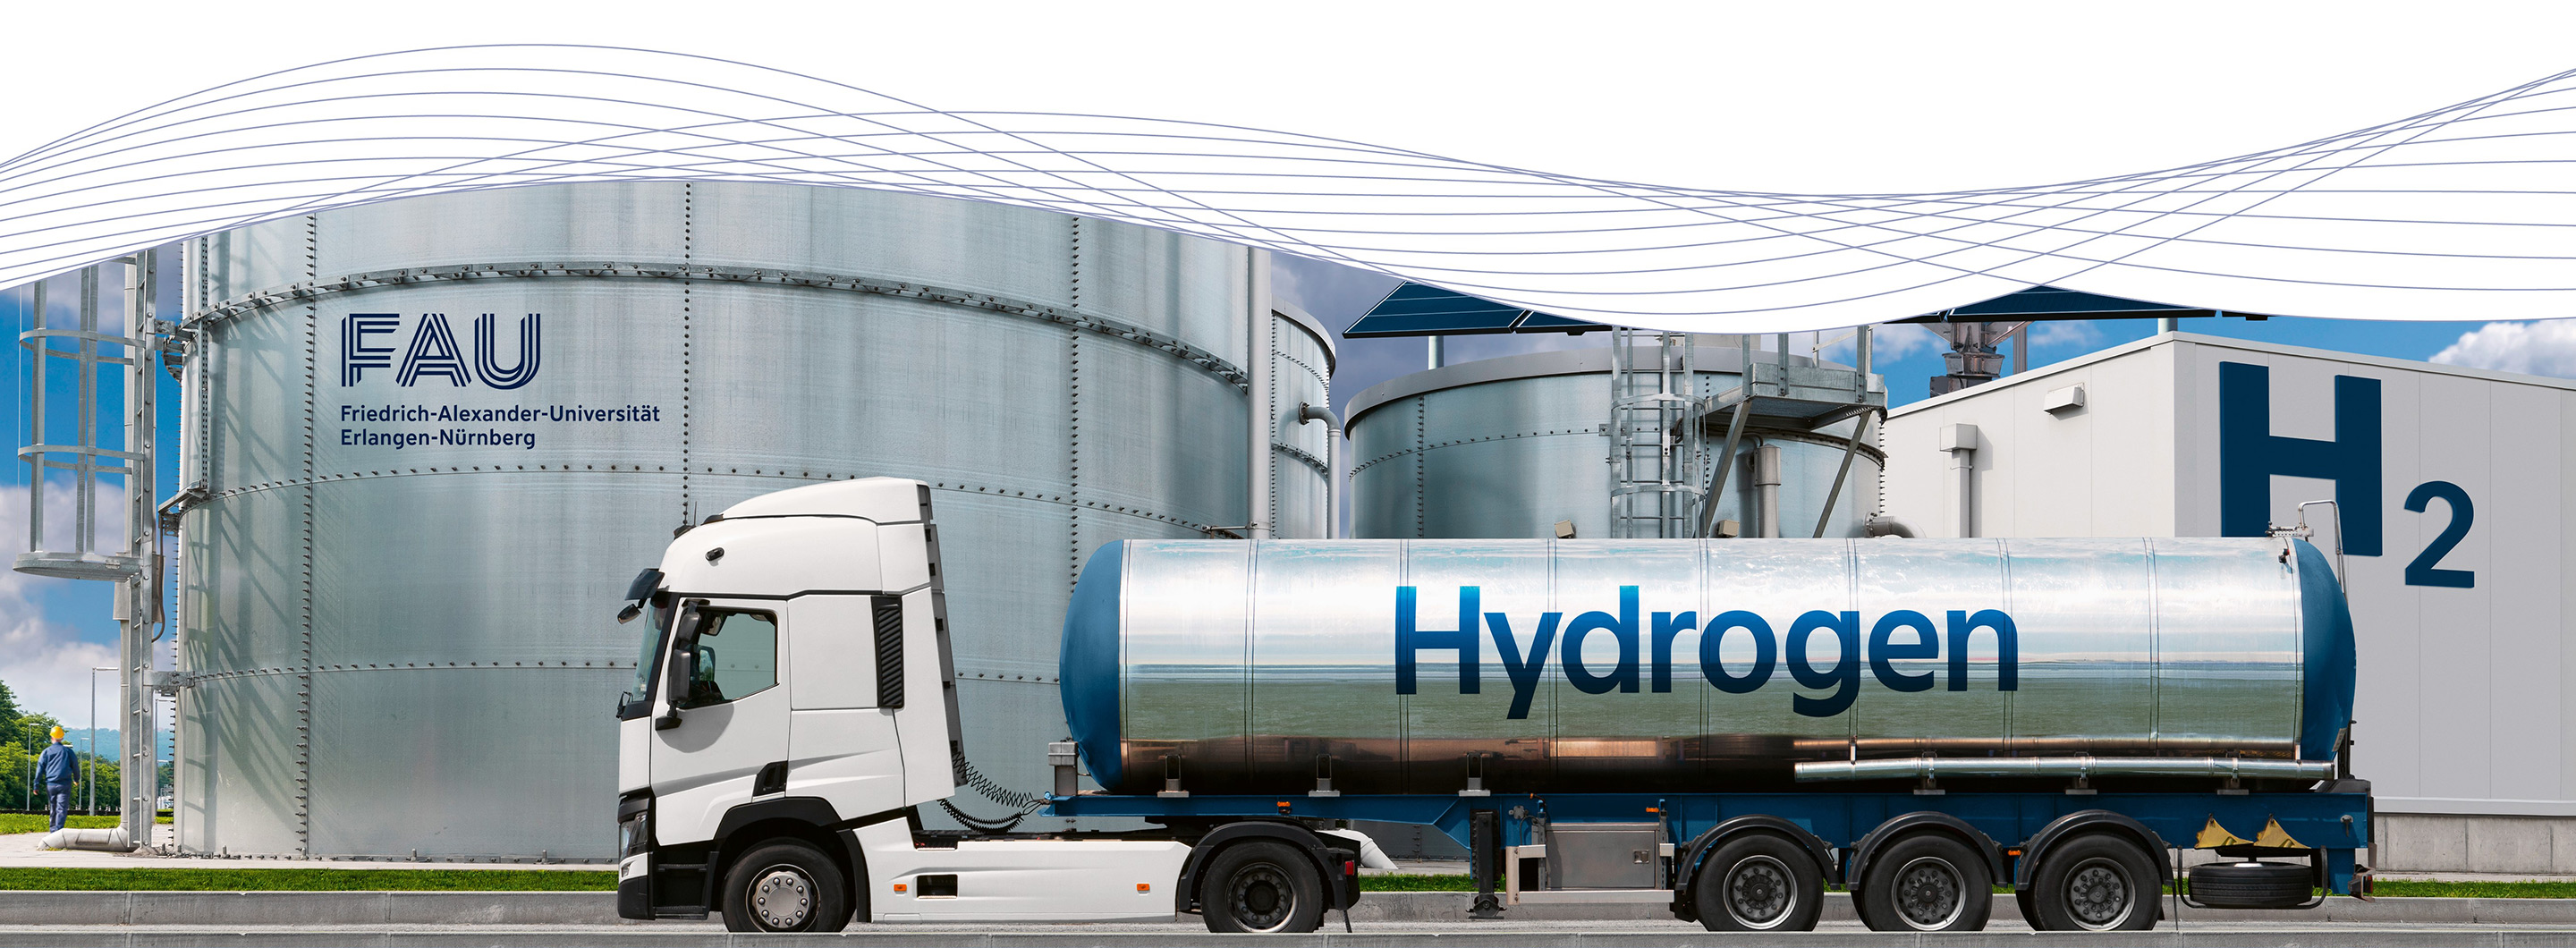 Auf einem weißen und silbernen Lastwagen steht "Hydrogen".